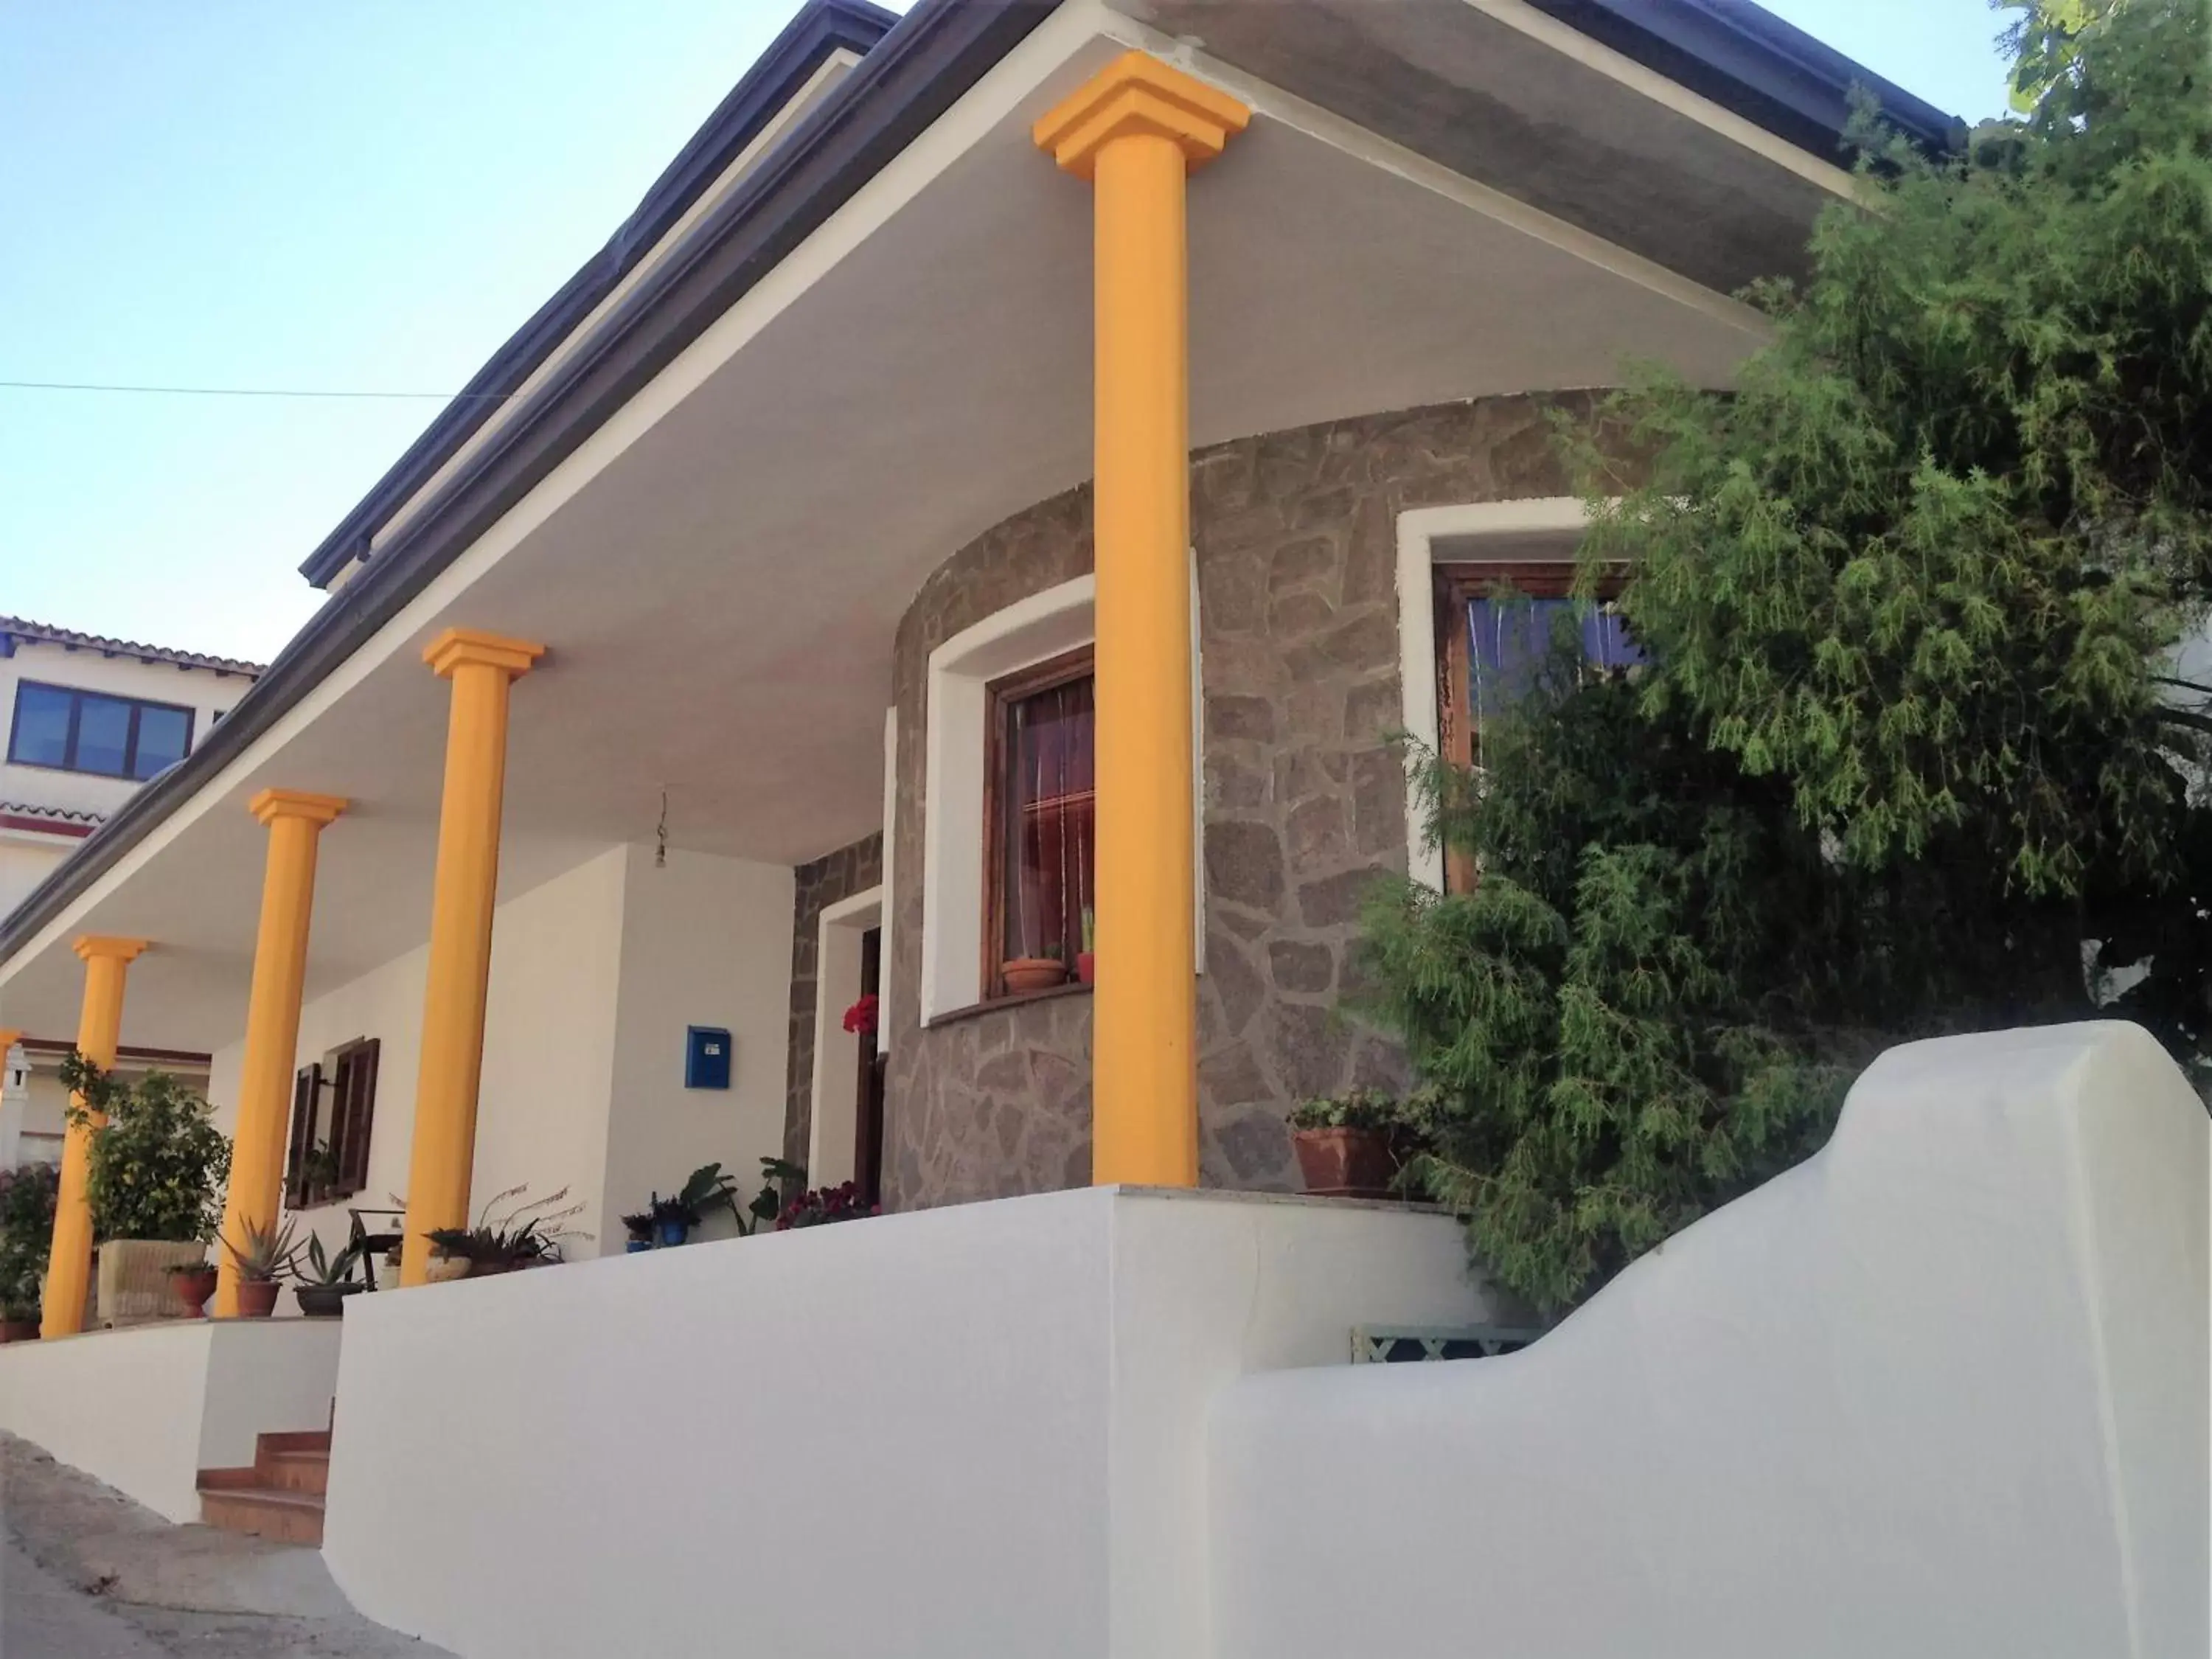 Property Building in Sole e Luna